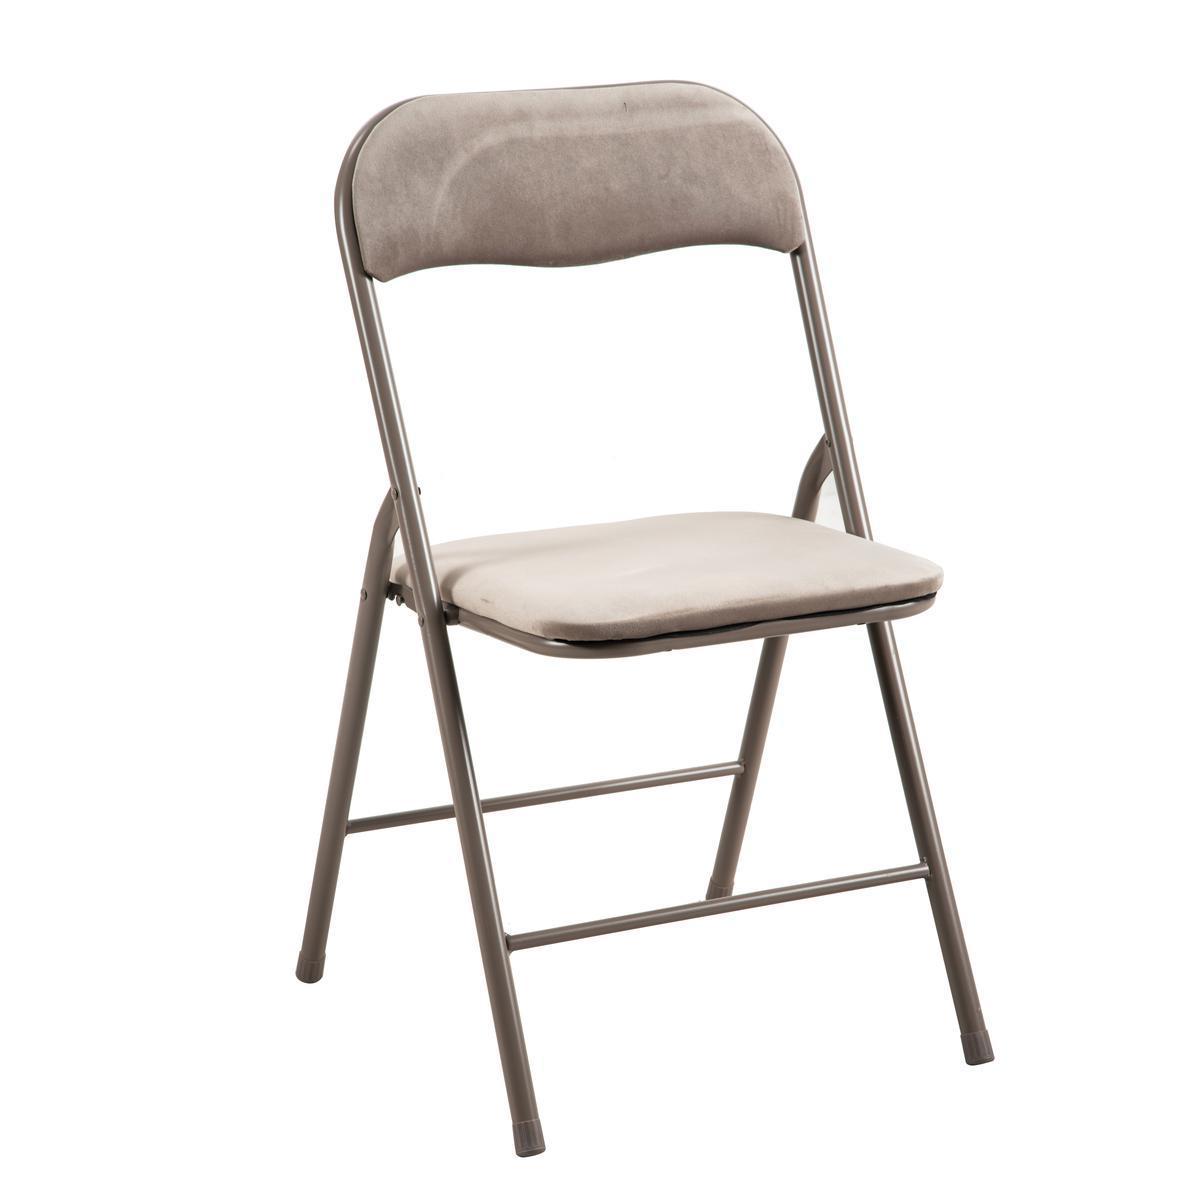 Chaise pliante - 43.5 x 43.5 x H 79 cm - Marron taupe